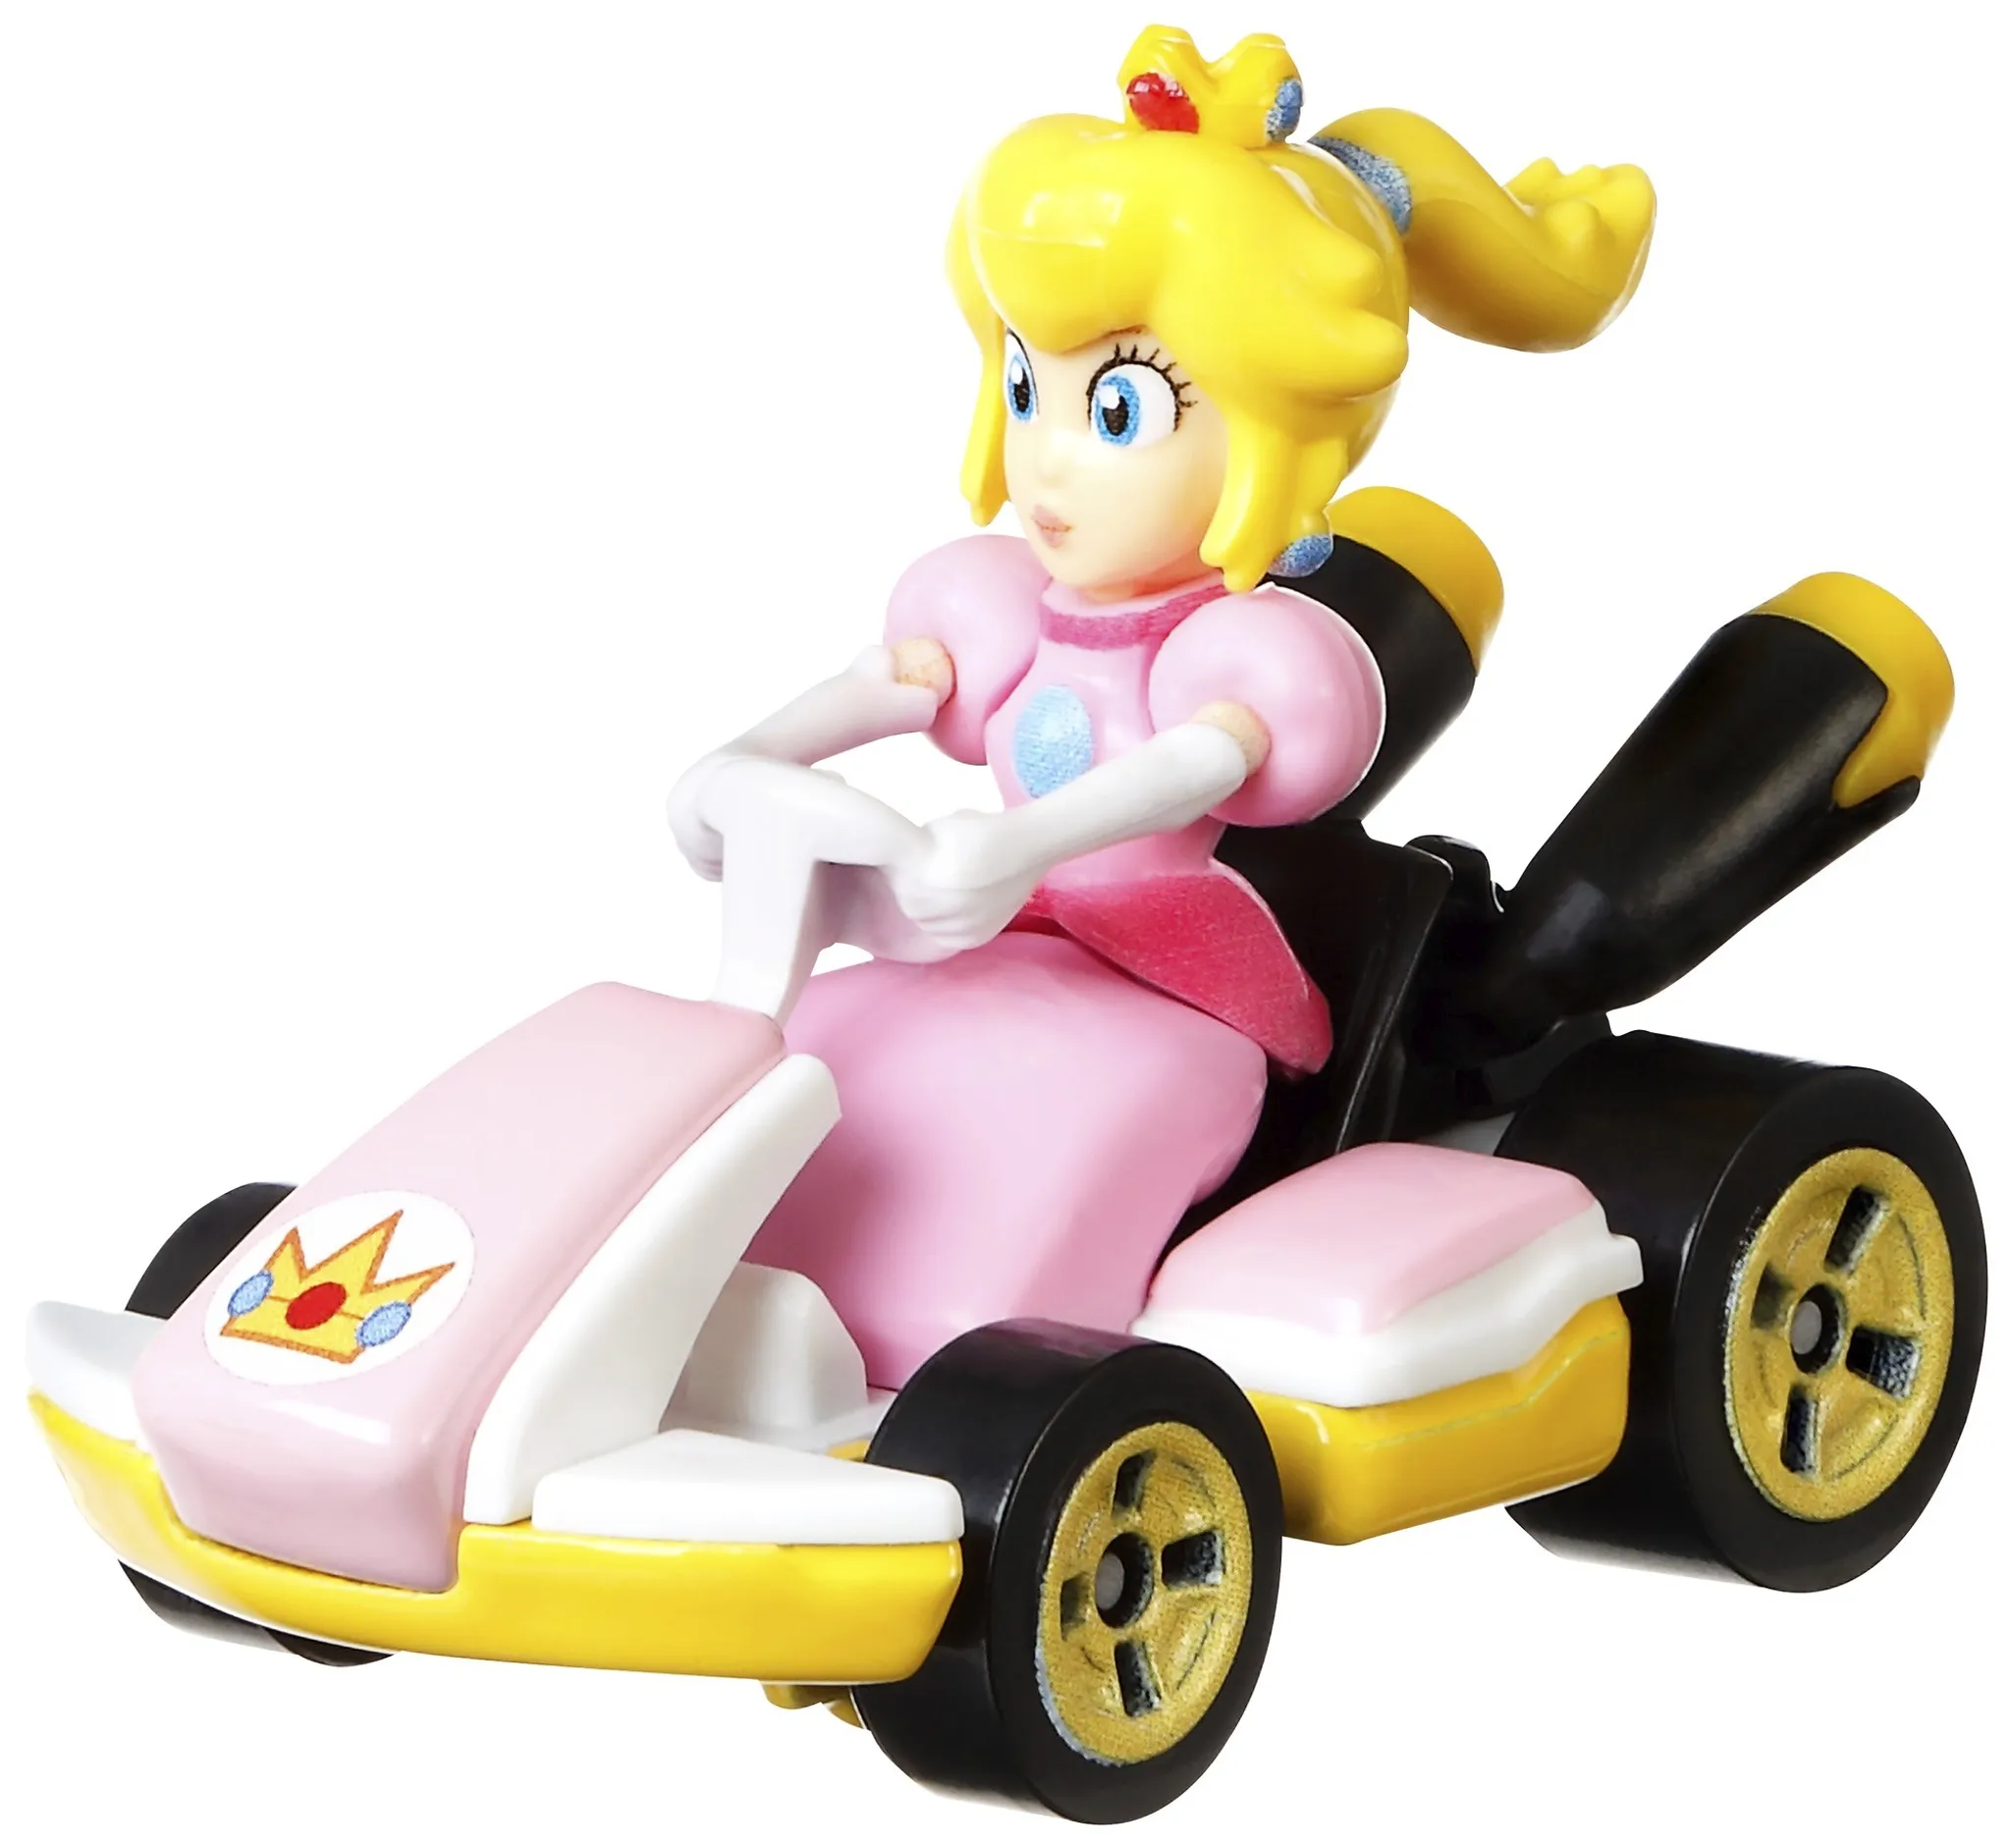 Hot Wheels Mario Kart Replica 1:64 Die-Cast